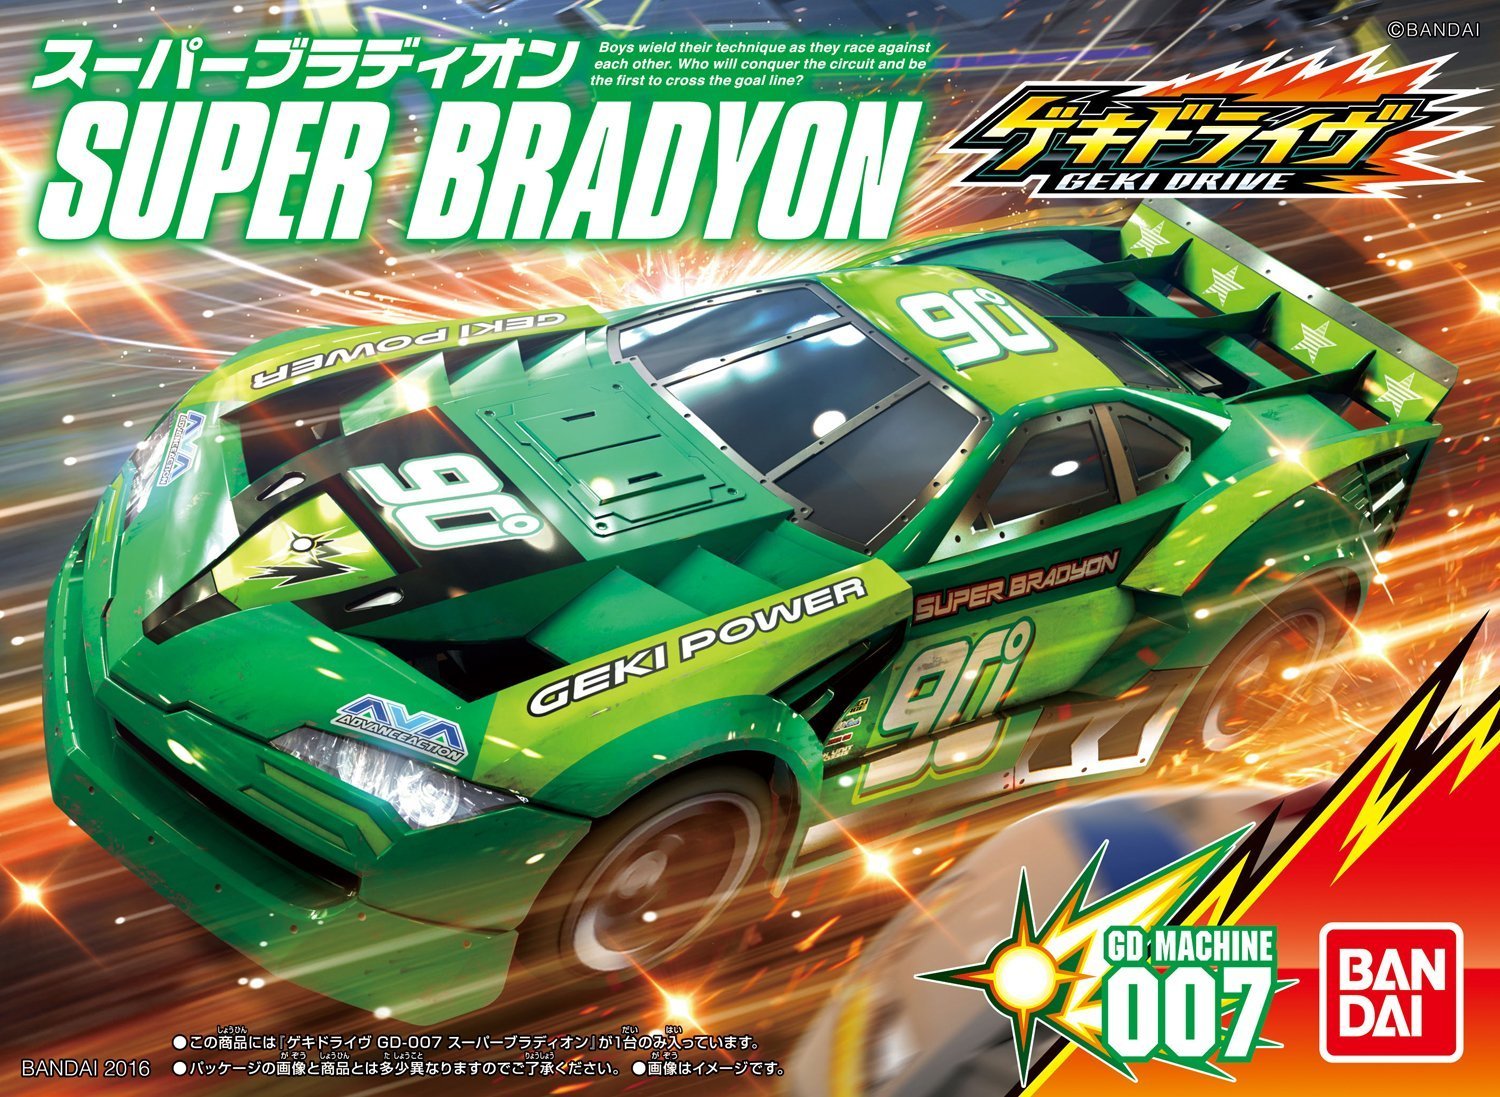 GD-007 Super Bradyon